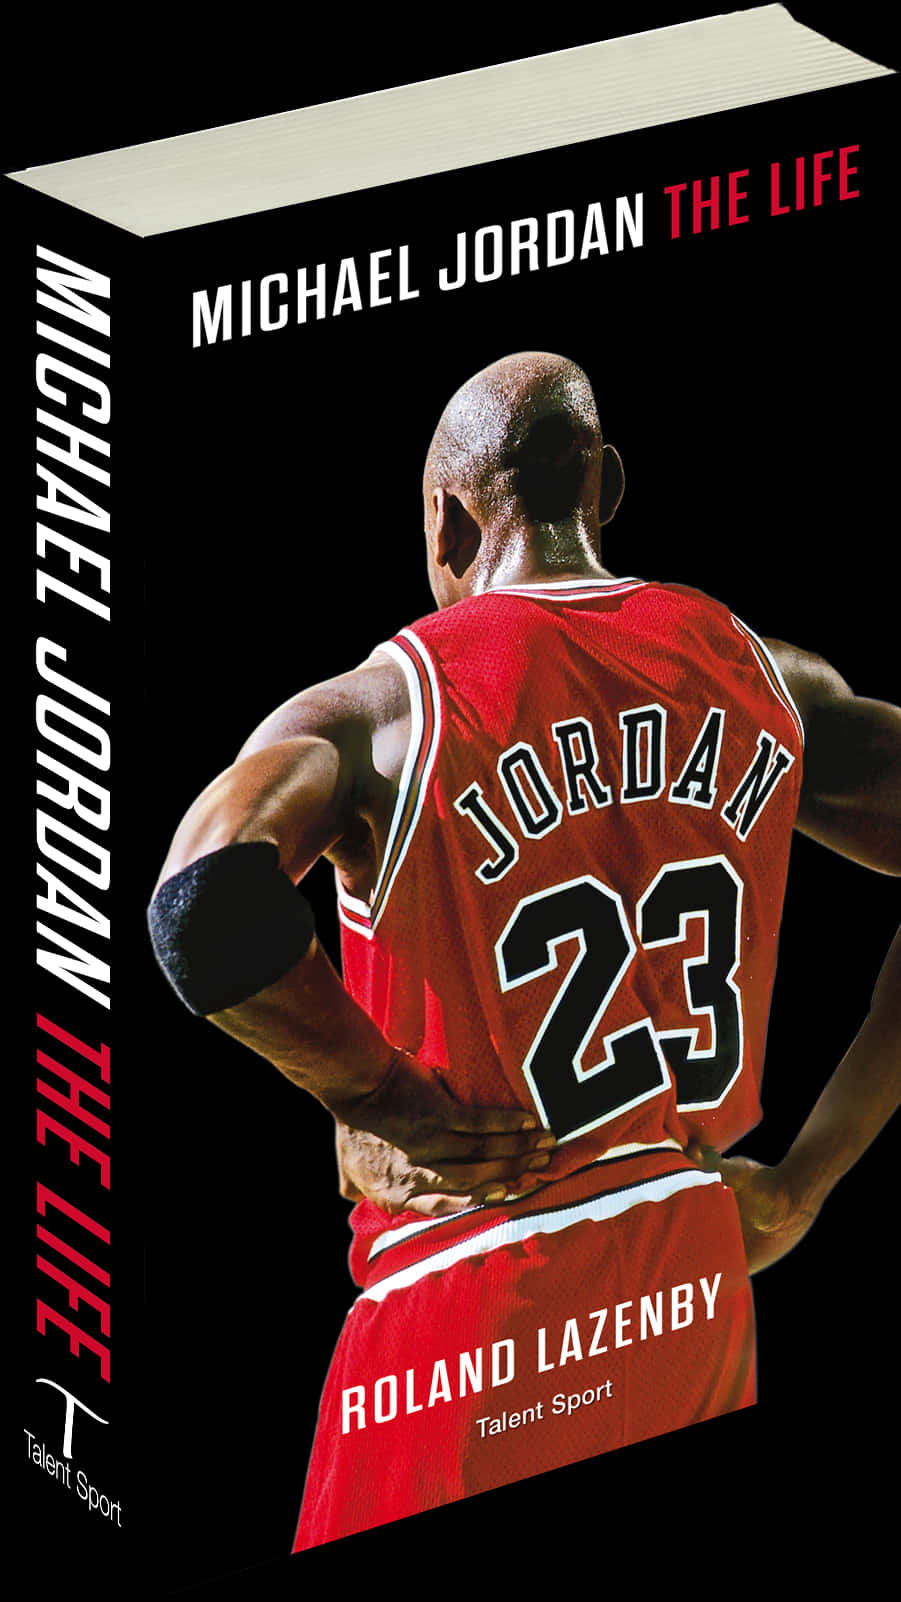 Michael Jordan The Life Book Cover PNG